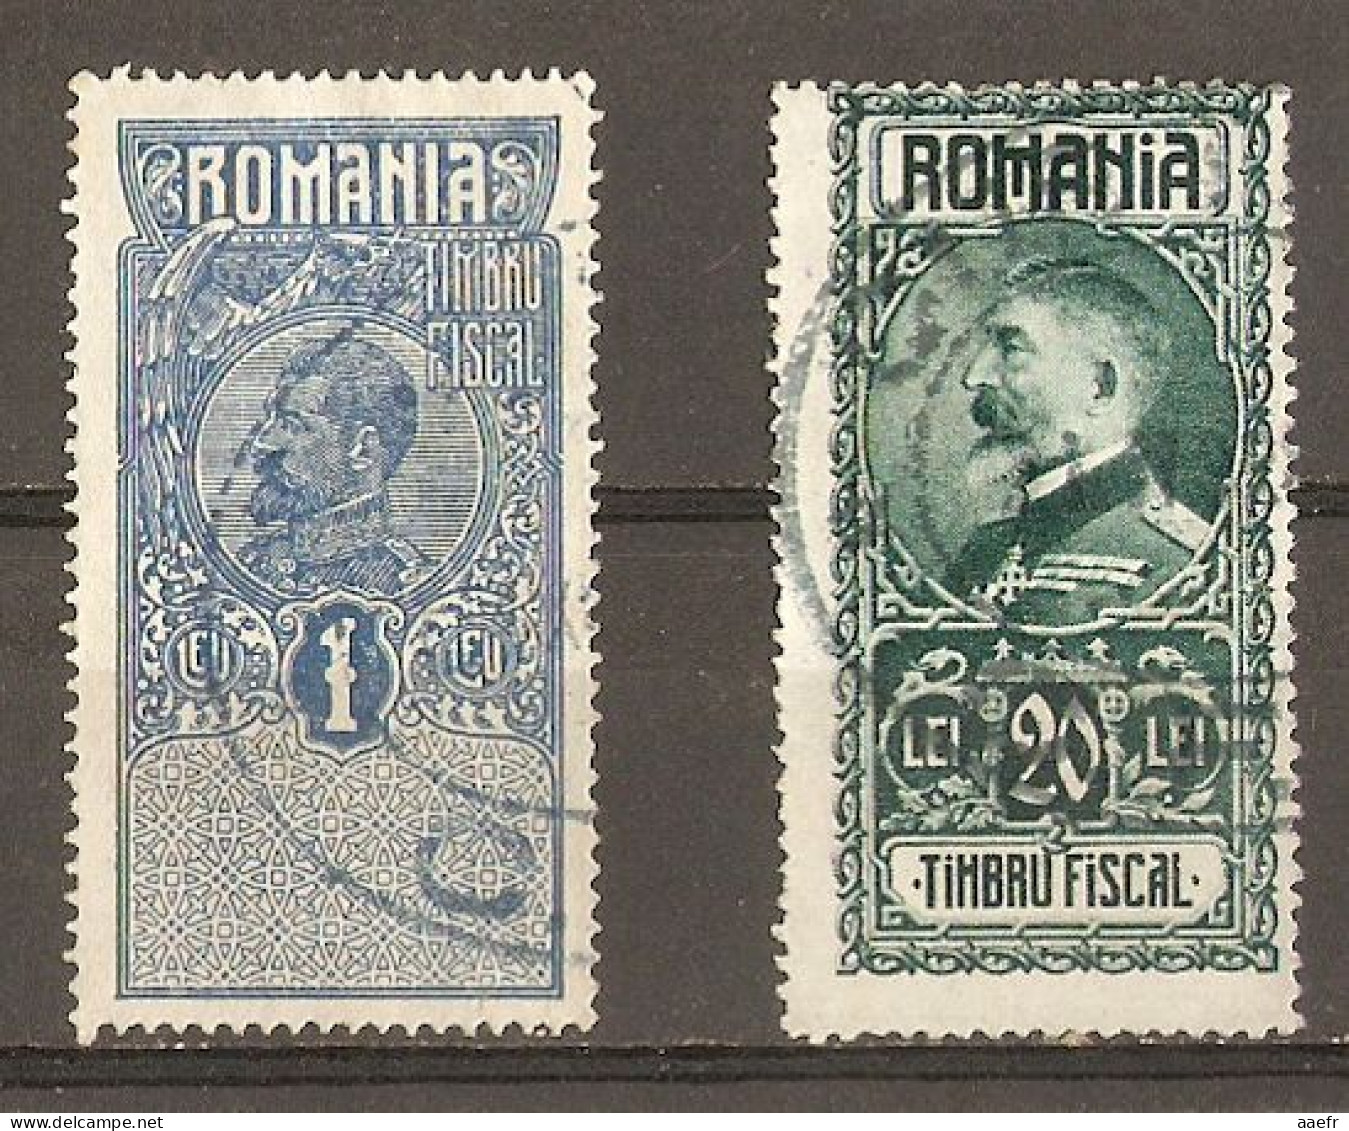 Roumanie - Petit Lot De 2 Timbres Fiscaux - Revenue Stamps - Charles 1er - Ferdinand 1er - Oblitérés